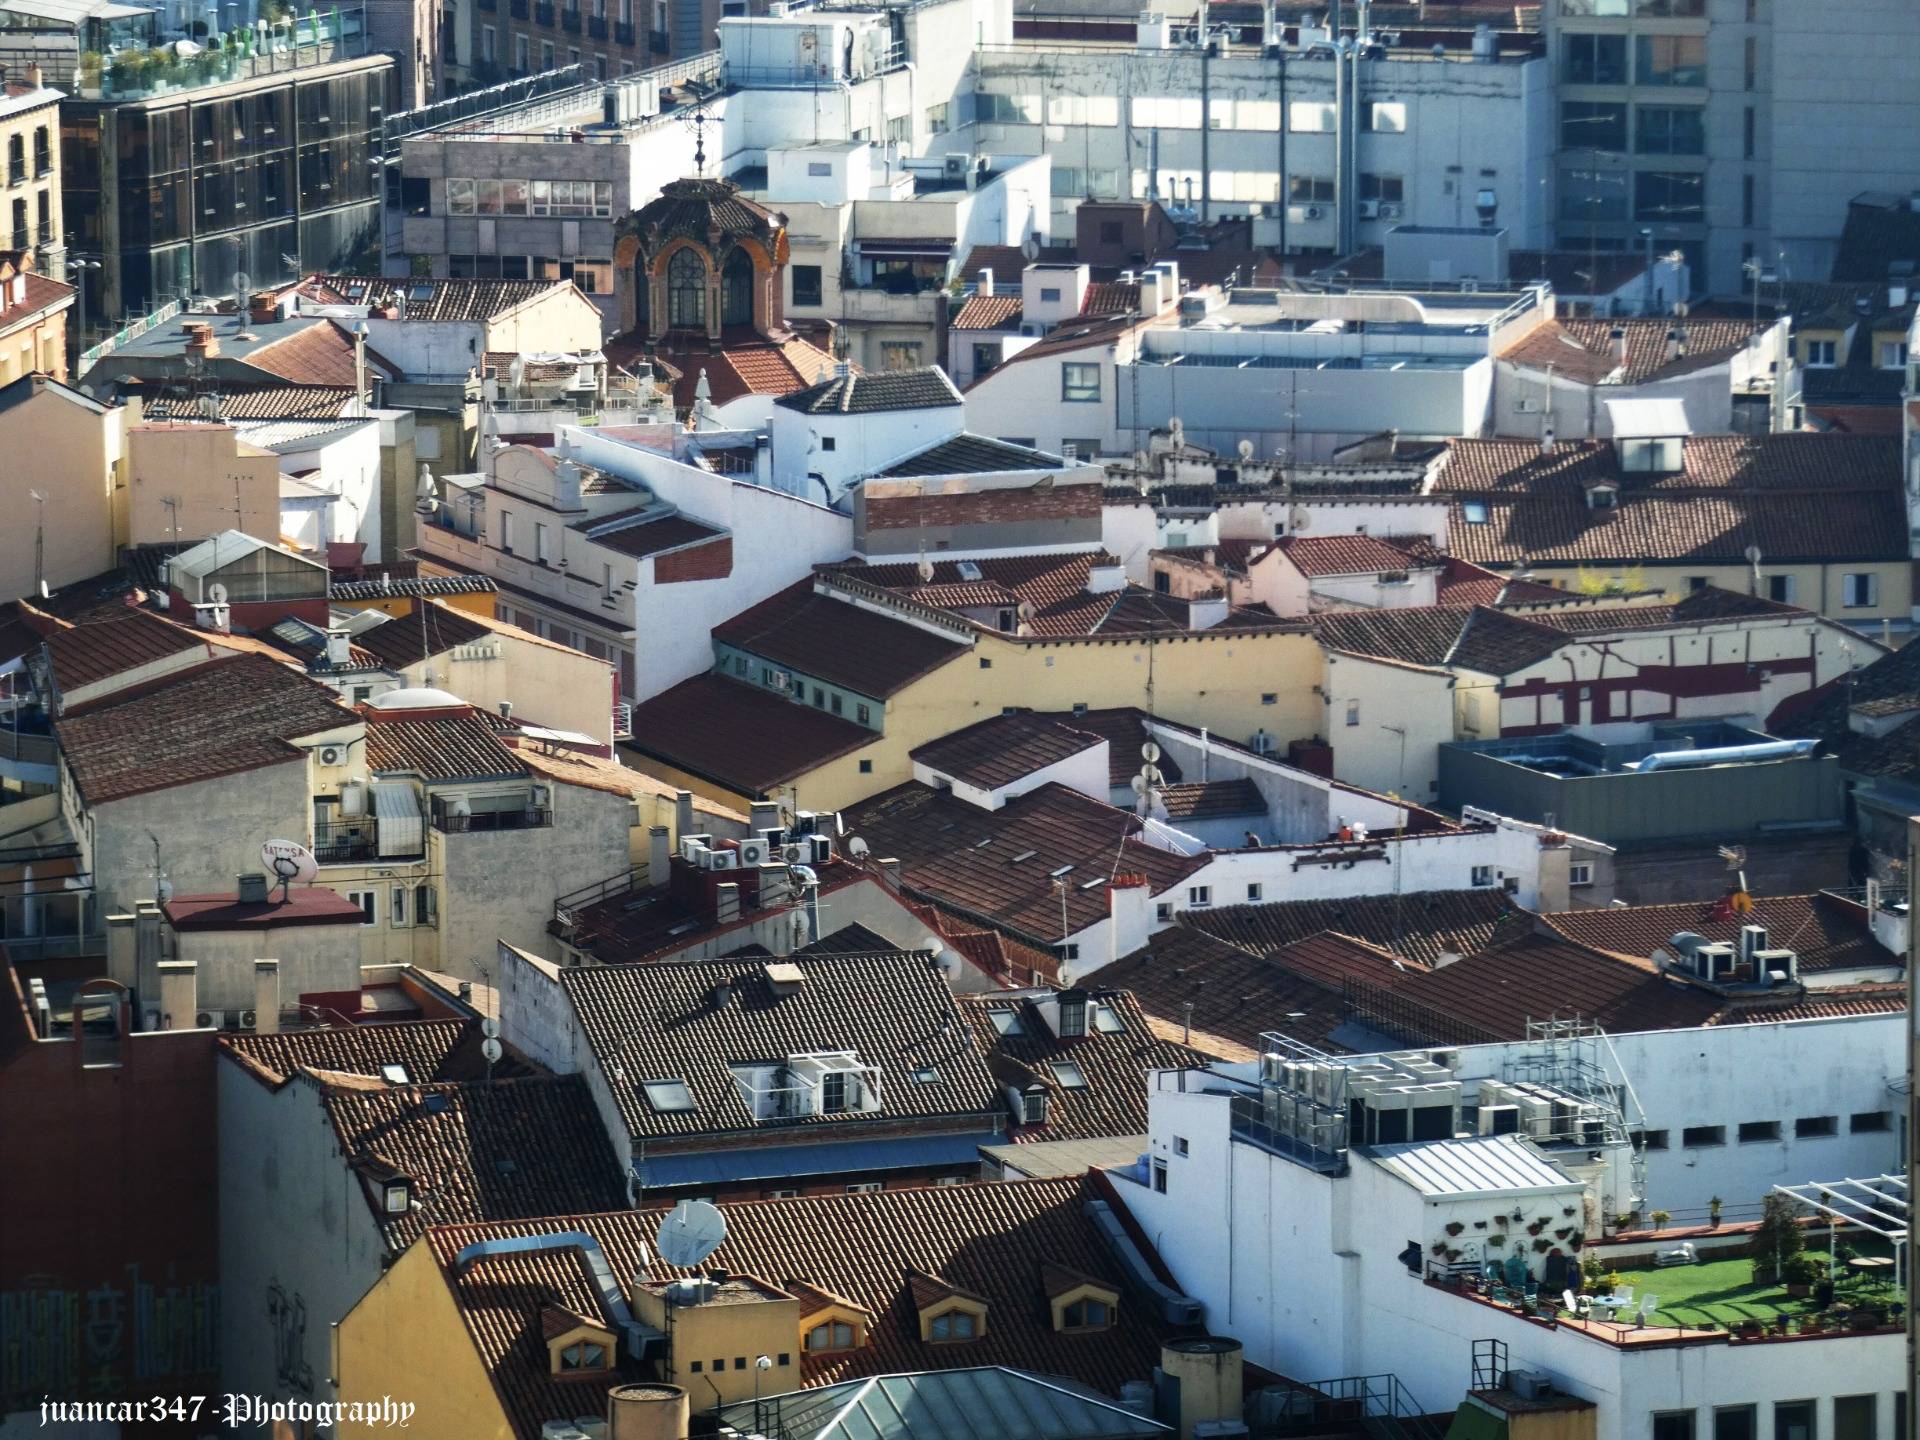 Madrid roofs